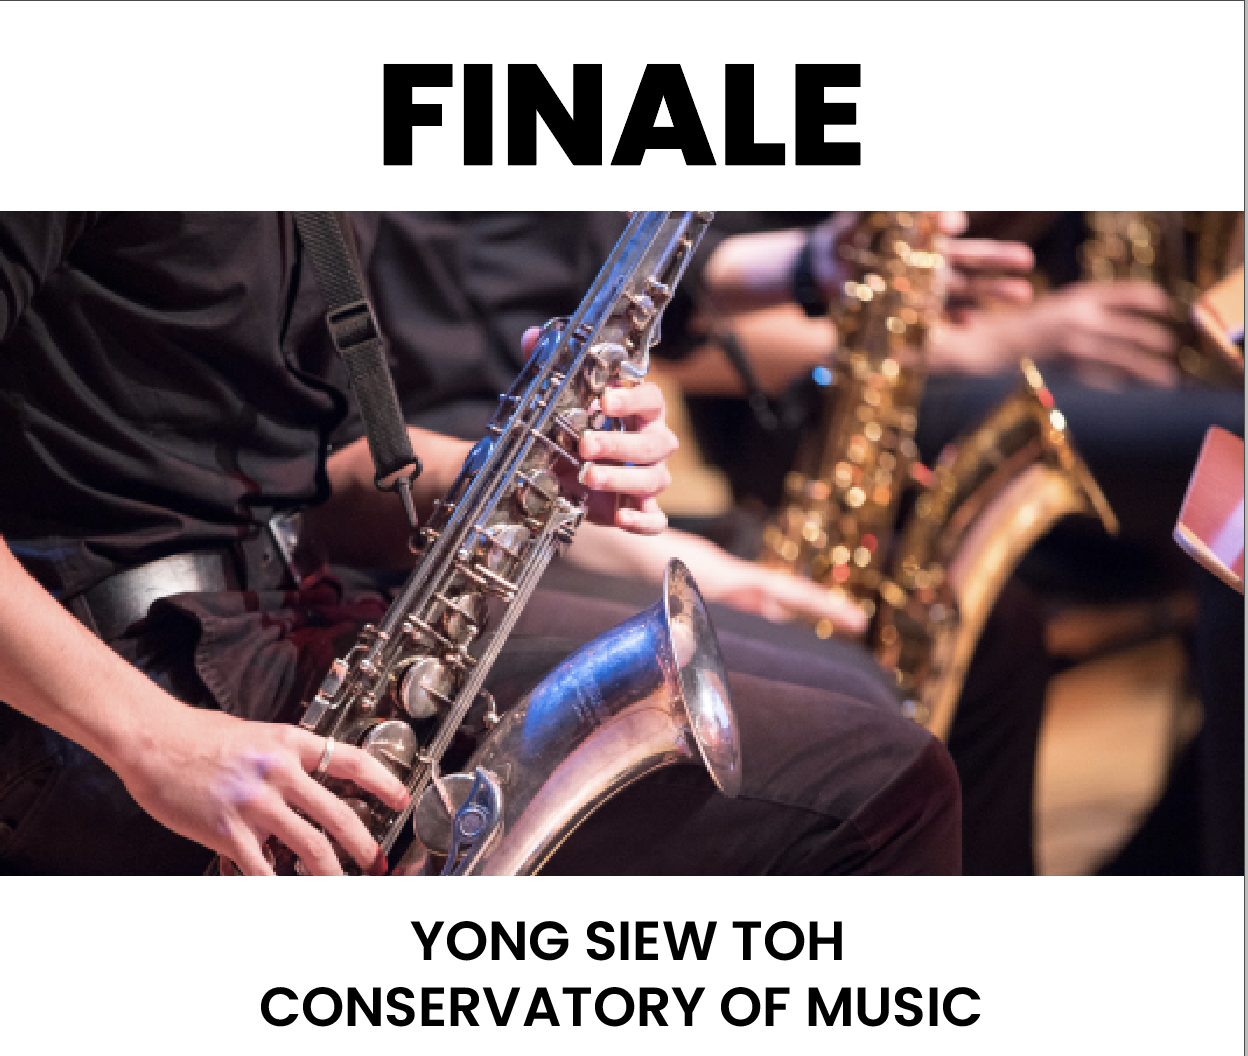 UWCSEA Dover - Finale 2024 Music on jun. 08, 19:00@Yong Siew Toh Conservatory of Music - Elegir asientoCompra entradas y obtén información enUWCSEA Ticket Hub uwcsea